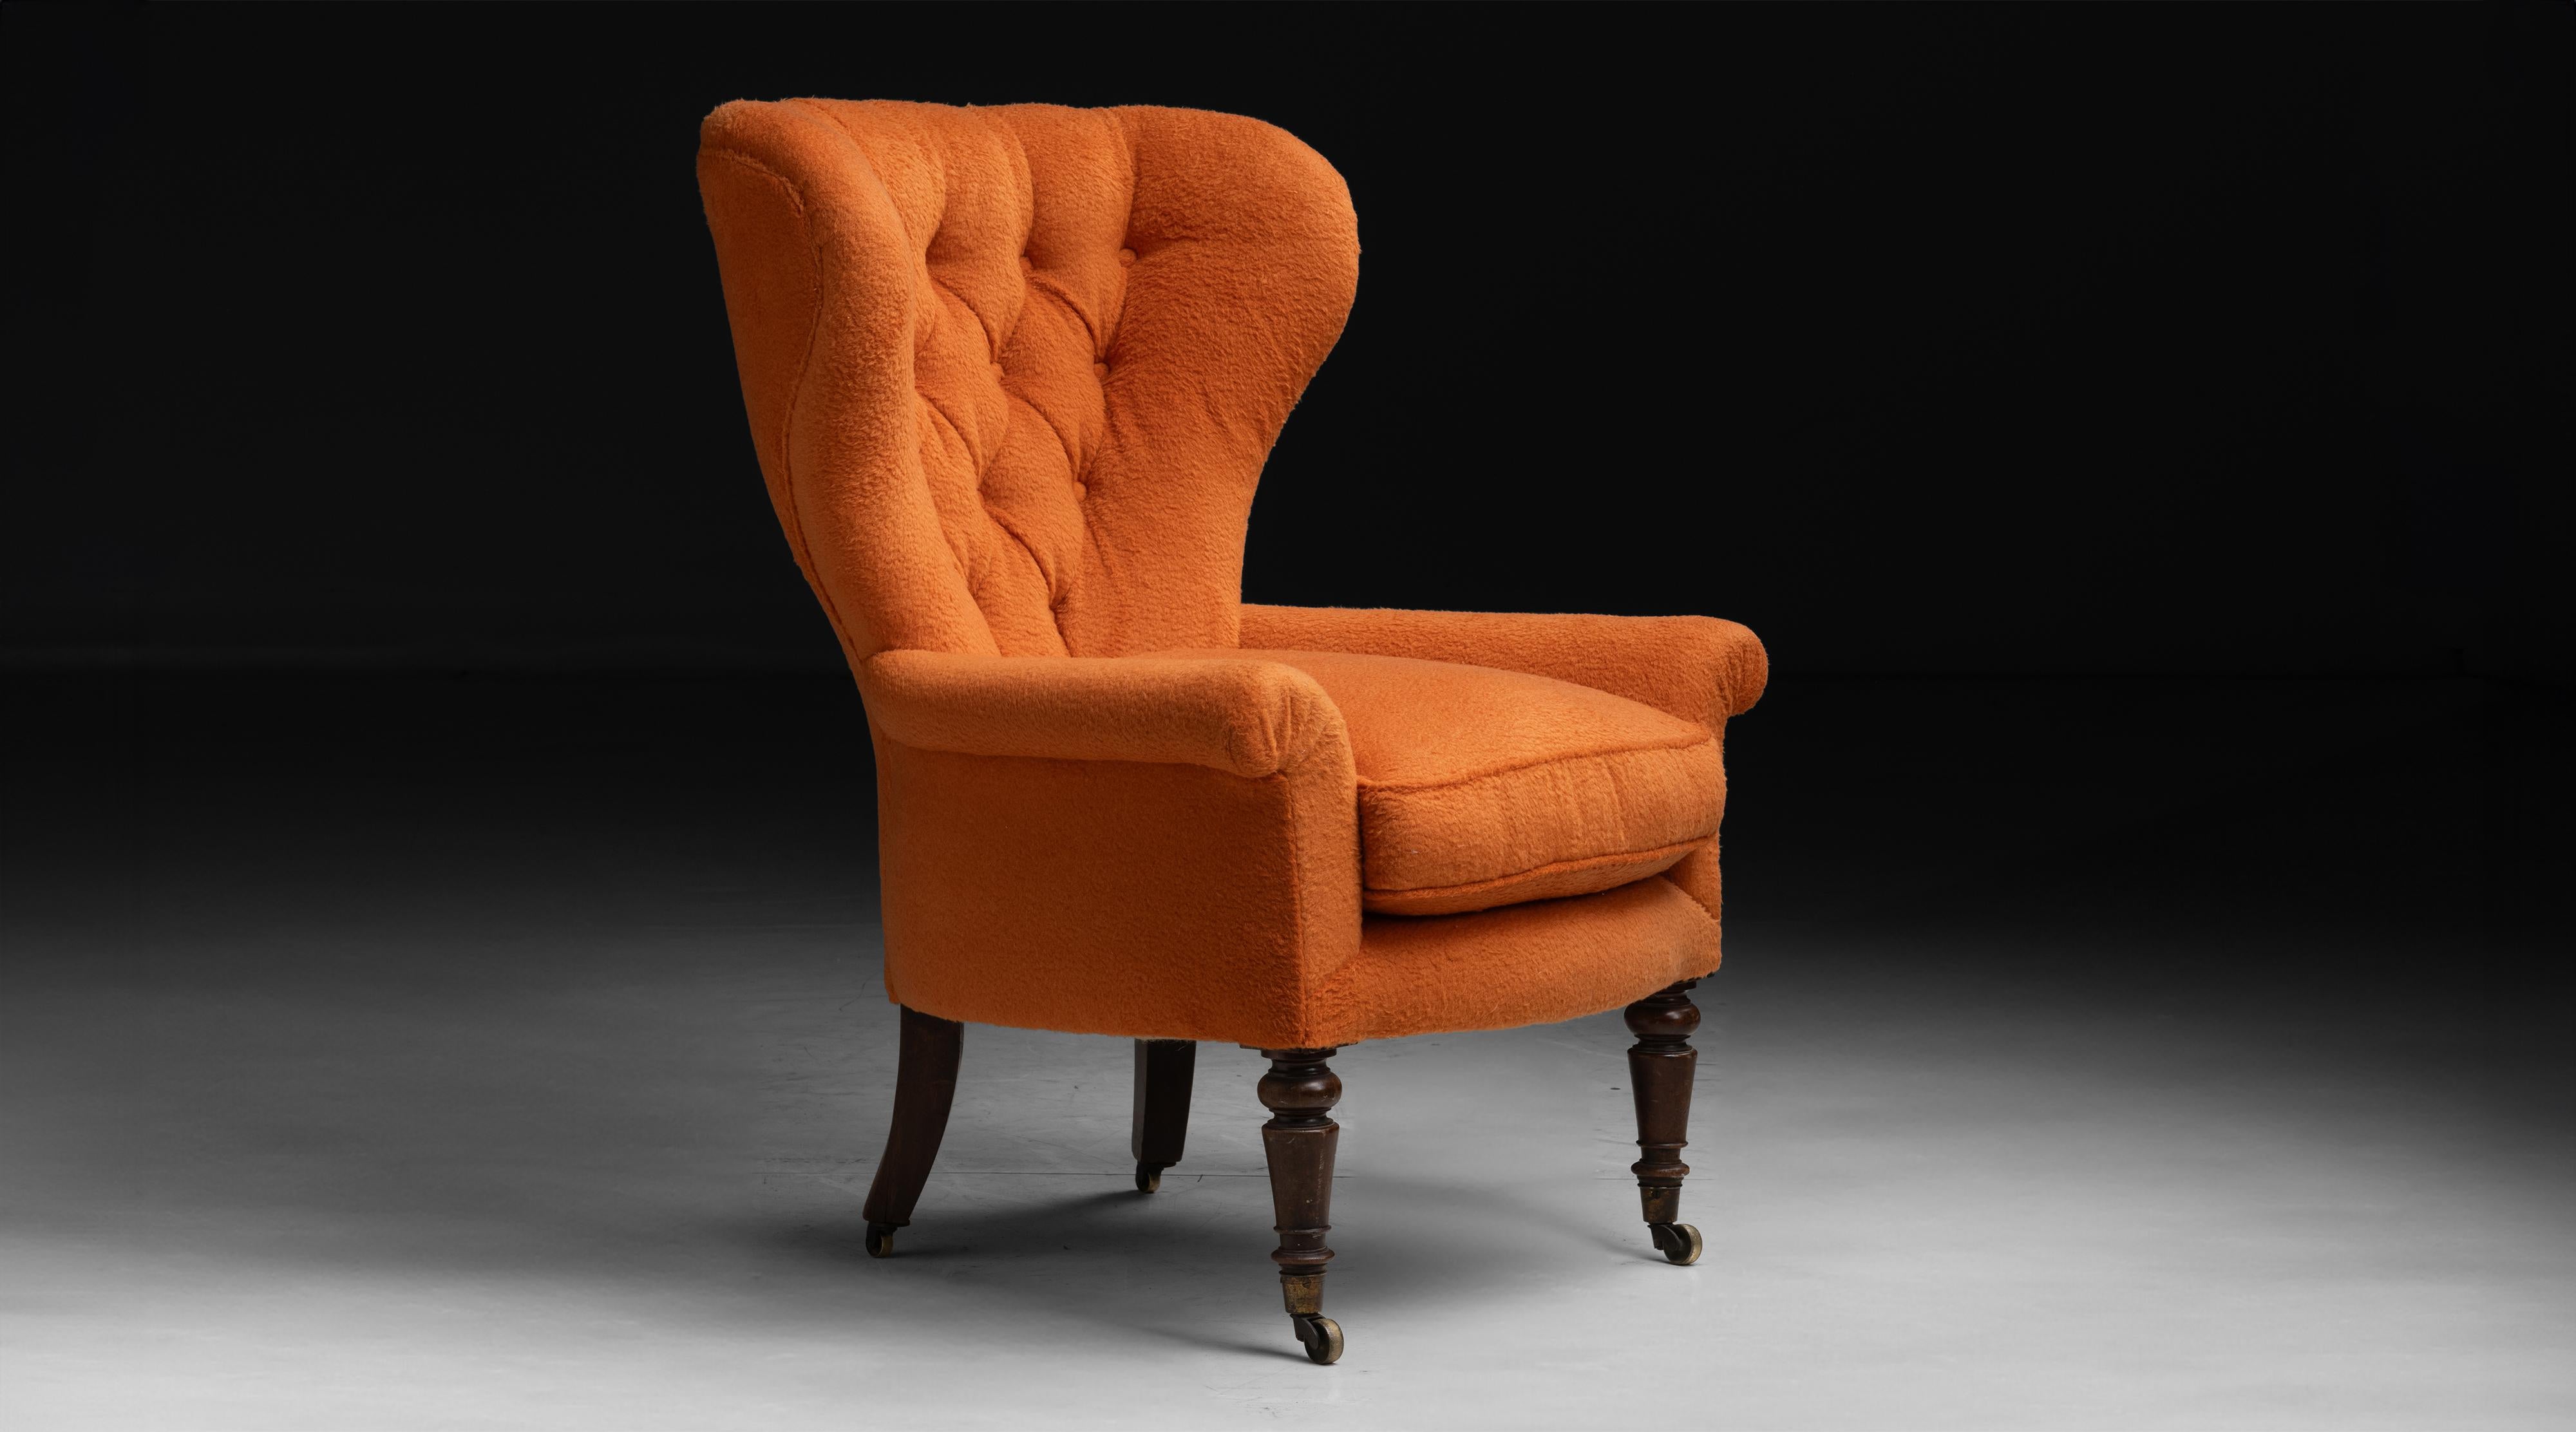 Angleterre vers 1820
Châssis de fauteuil ancien à boutons, nouvellement tapissé de molleton orange de Bichon par Rosemary Hallgarten.
31 